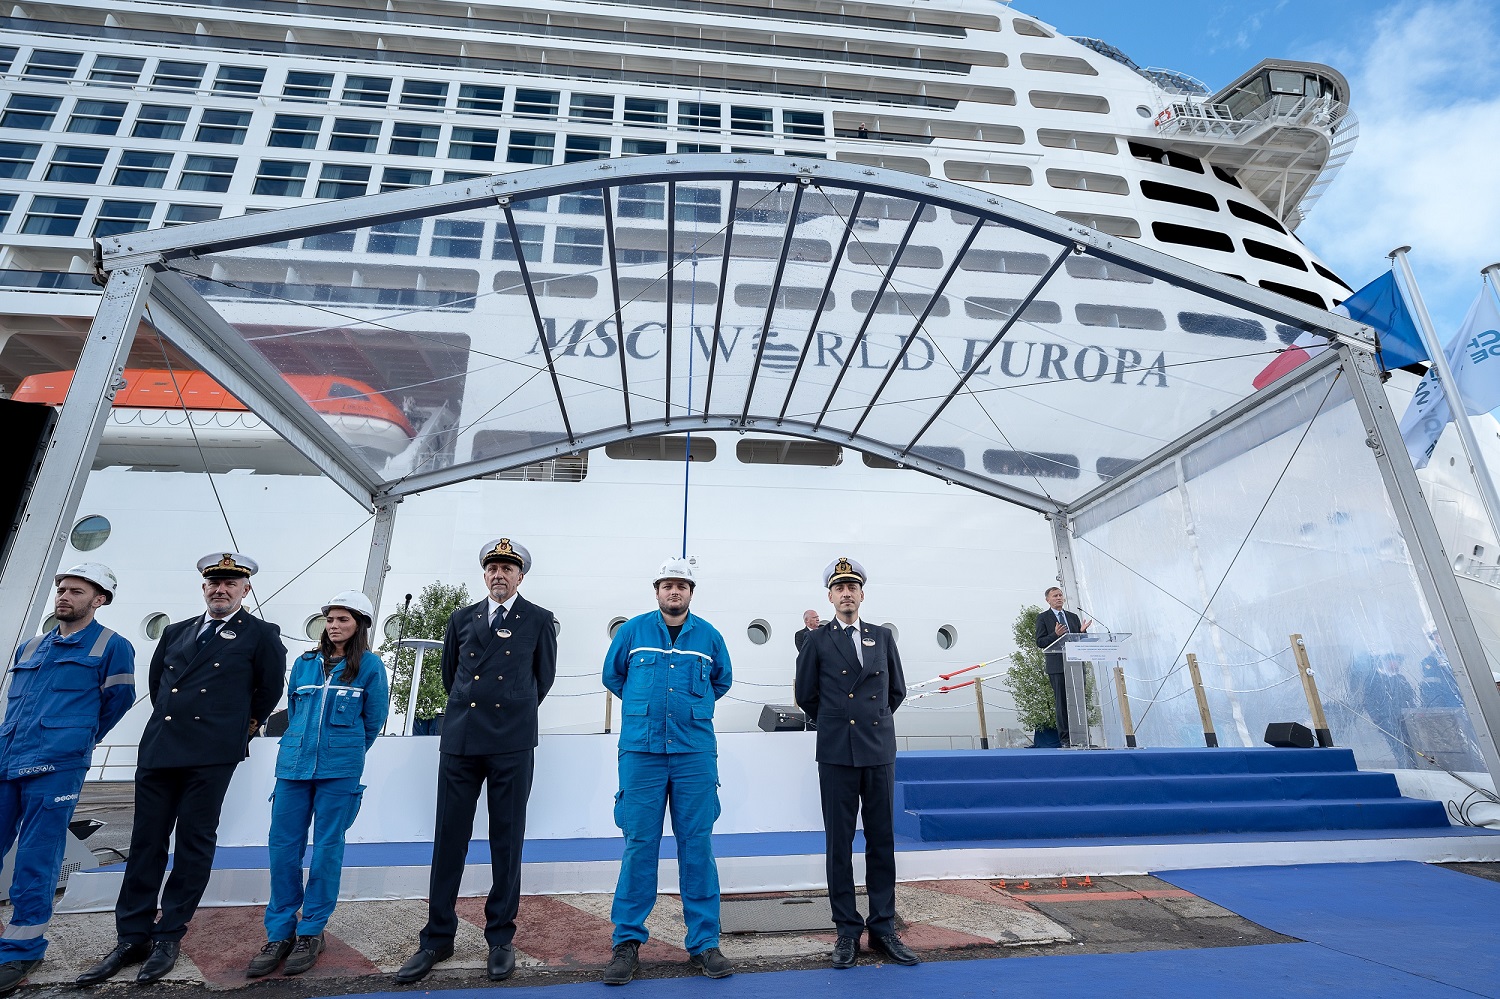 Celebrata la consegna di Msc World Europa: è la nave green a gnl più avanzata al mondo